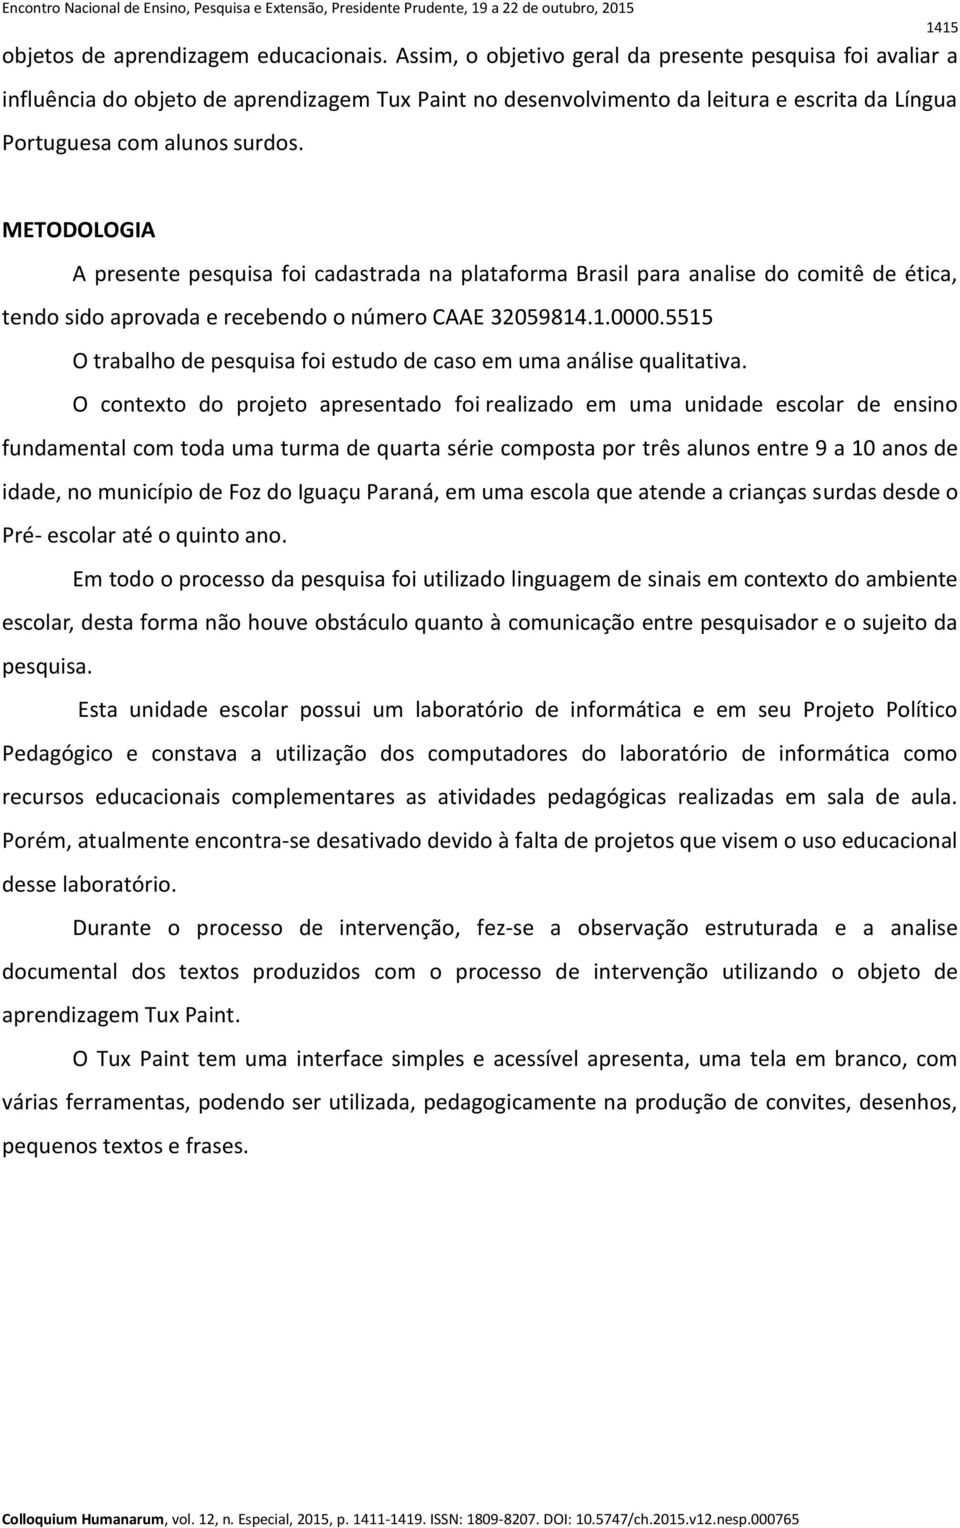 METODOLOGIA A presente pesquisa foi cadastrada na plataforma Brasil para analise do comitê de ética, tendo sido aprovada e recebendo o número CAAE 32059814.1.0000.